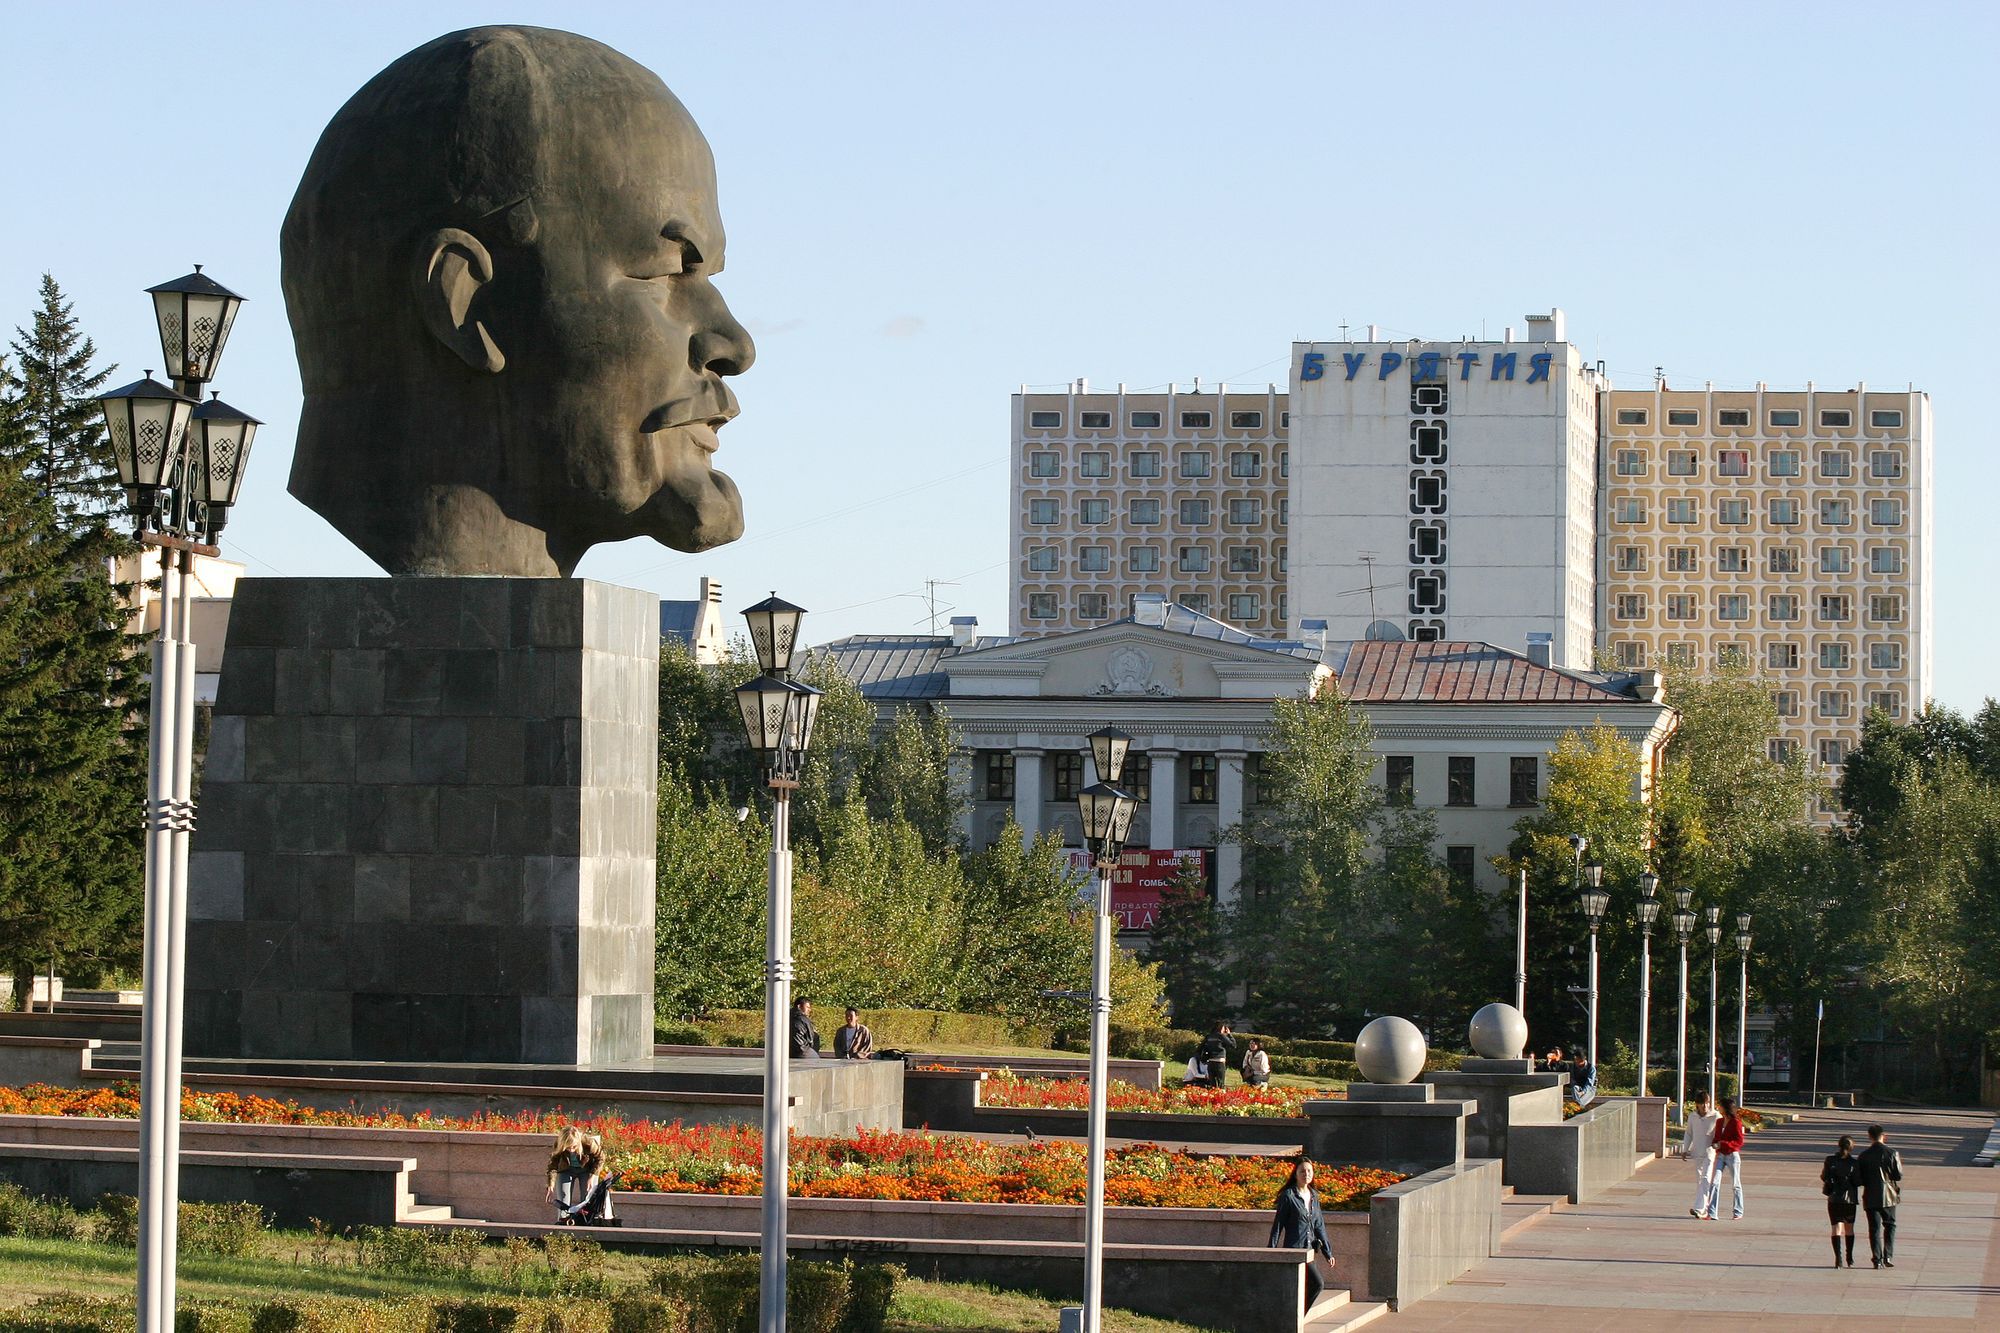 Ли улан удэ. Улан Удэ Ленин. Памятник Ленину (Улан-Удэ). Голова Ленина в Улан-Удэ. Бюст Ленина Улан-Удэ.